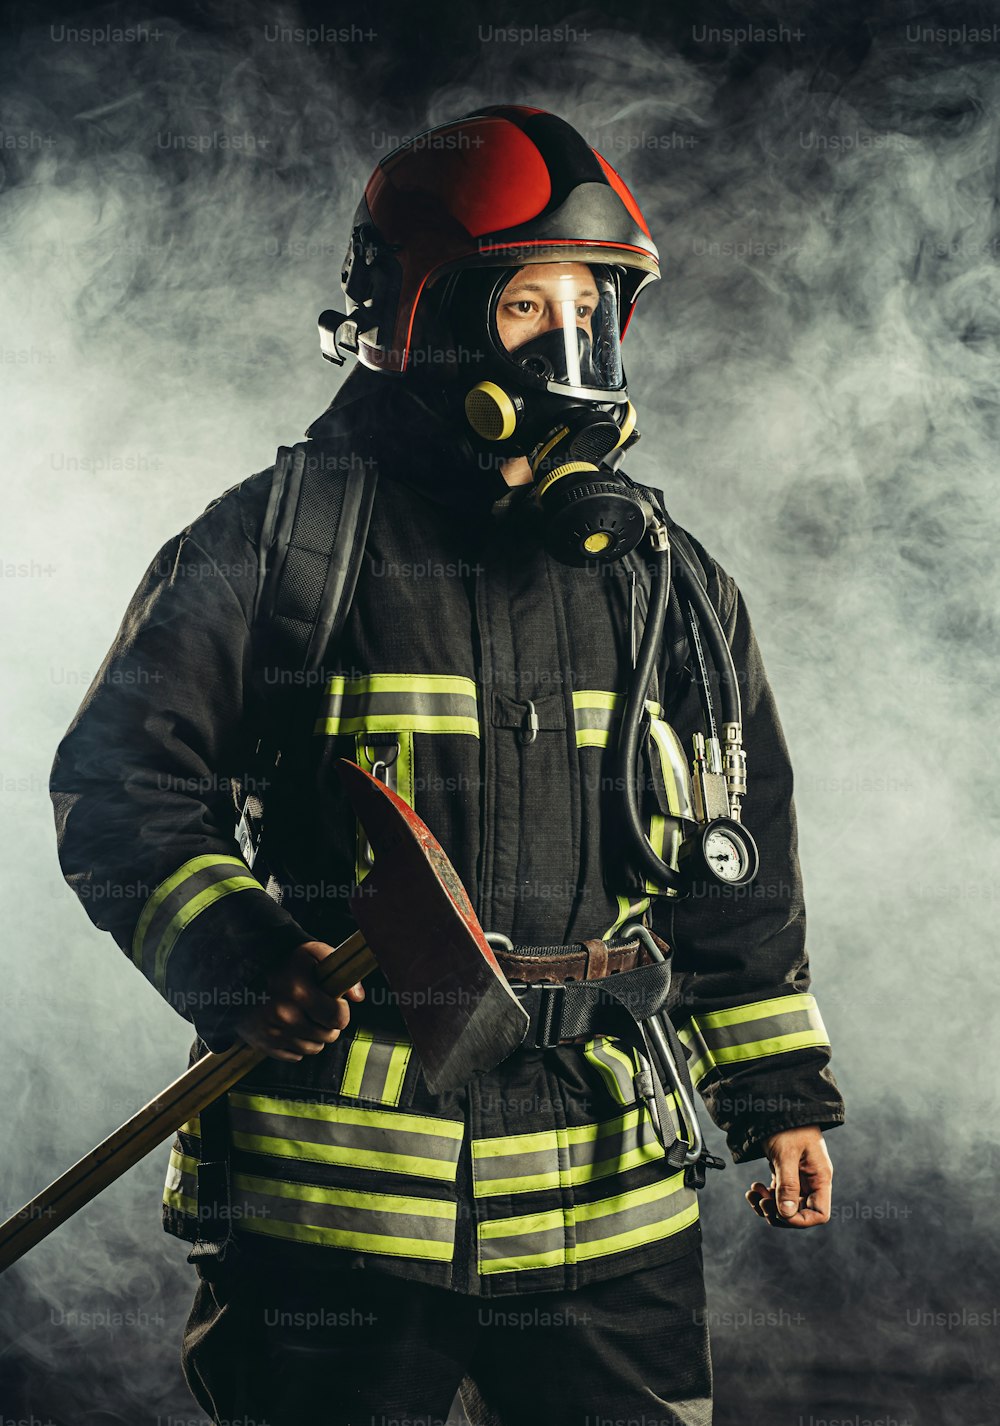 Starker Feuerwehrmann mittleren Alters, der Menschen vor Feuer rettet und schützt, trägt eine spezielle Maske oder einen Helm und eine Schutzuniform